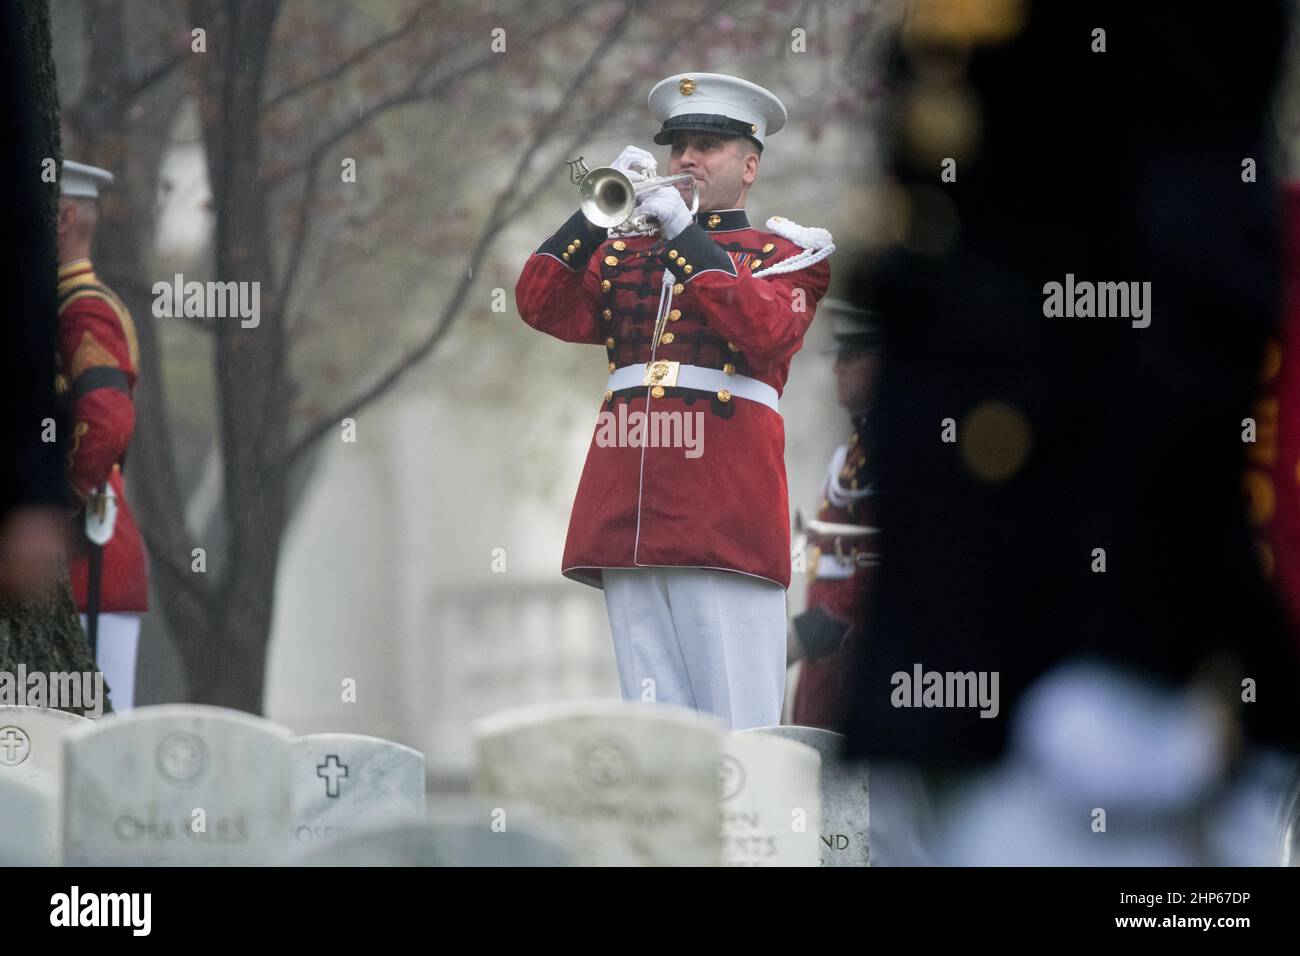 'TAP' se juega durante el servicio funerario para el ex astronauta y senador estadounidense John Glenn, quien fue enterrado con honores militares completos, en el Cementerio Nacional de Arlington en Virginia el jueves, 6 de abril de 2017, el día en que él y su esposa Annie se casaron en 1943. Foto de stock